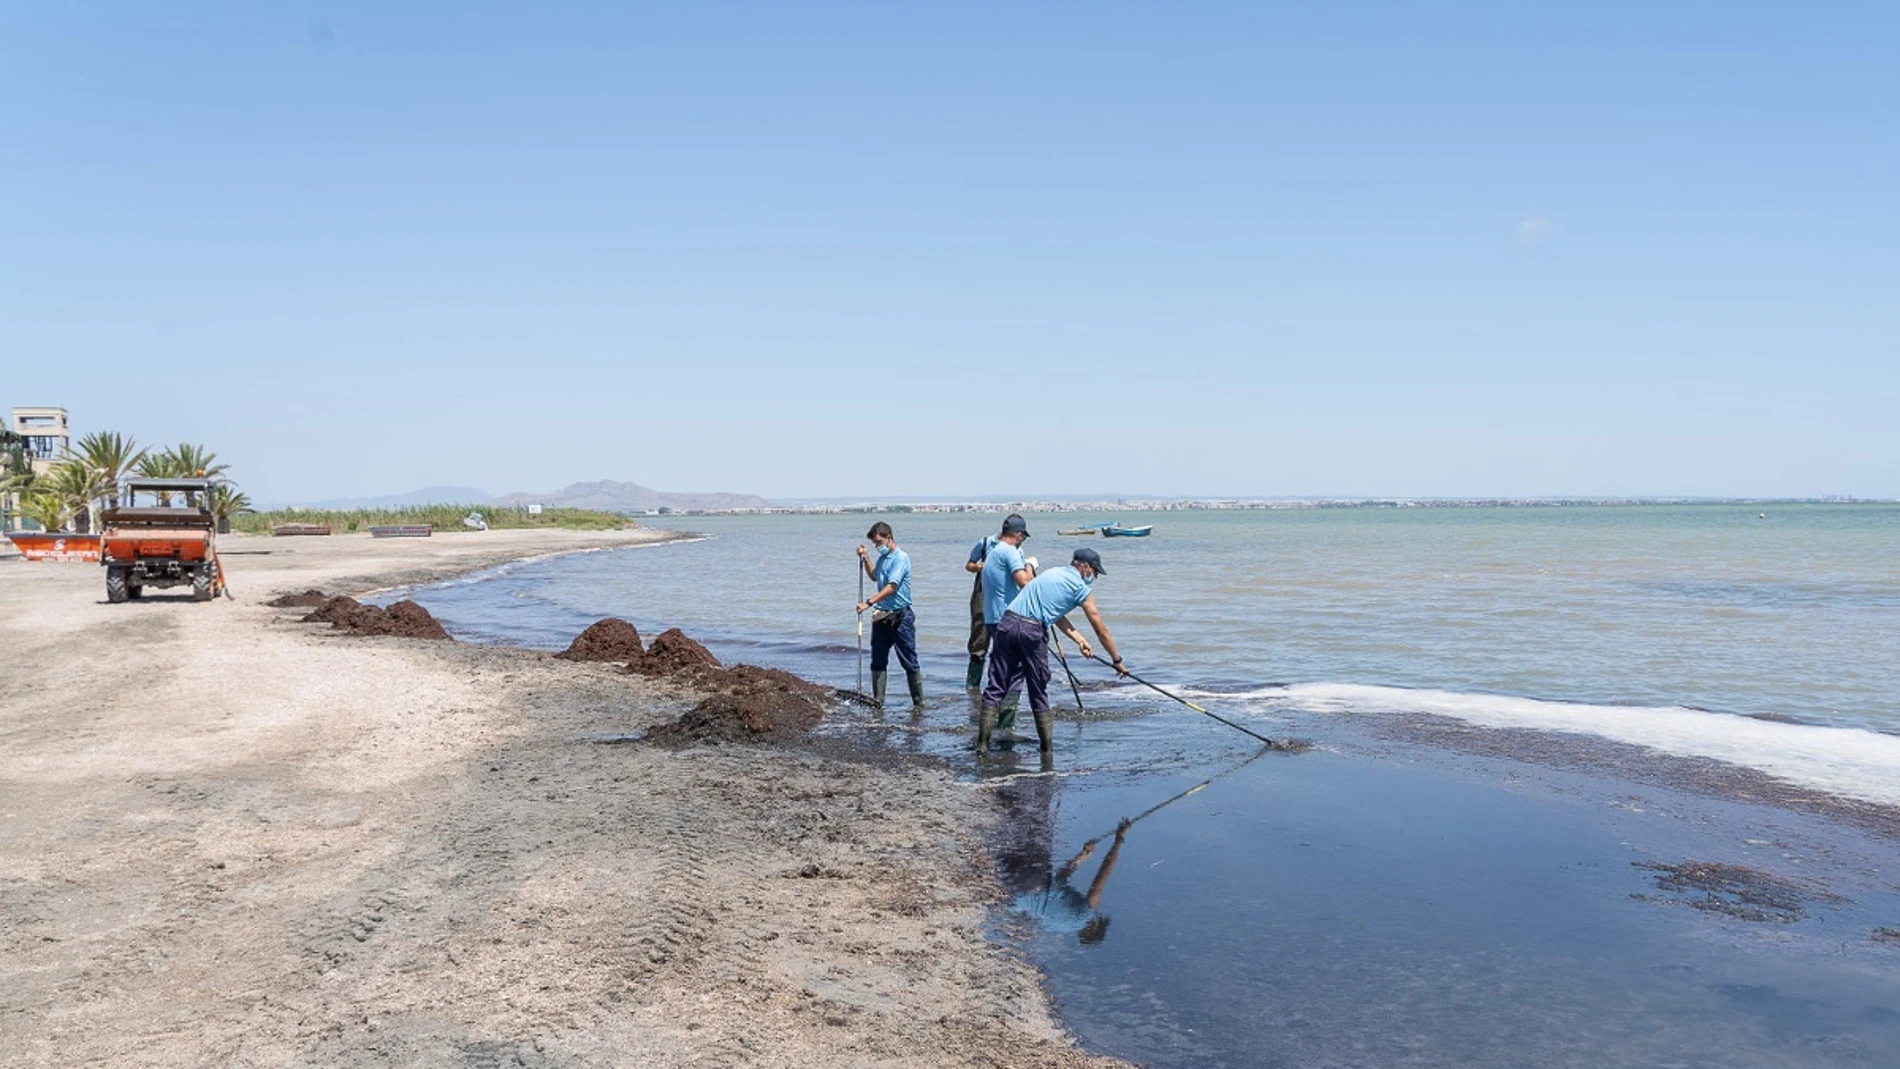 Las brigadas del Litoral retiran 60 toneladas de algas y biomasa en las playas sur del Mar Menor durante agosto